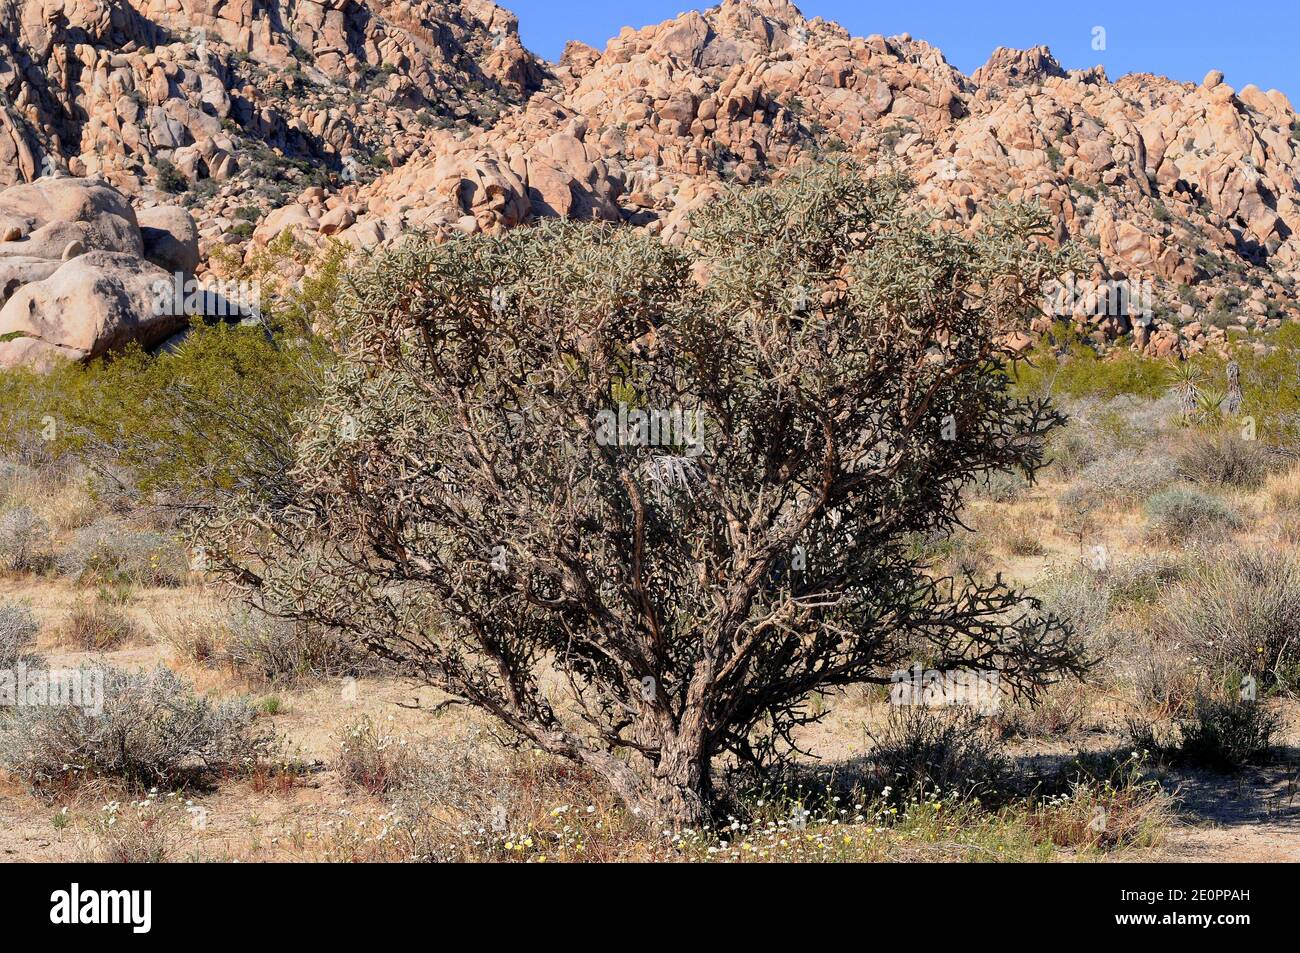 La cholla de diamante (Cylindropuntia ramosissima u Opuntia ramosissima) es un cactus de cholla nativo del desierto de Mojave (EE.UU.) y noroeste de México. Esto Foto de stock